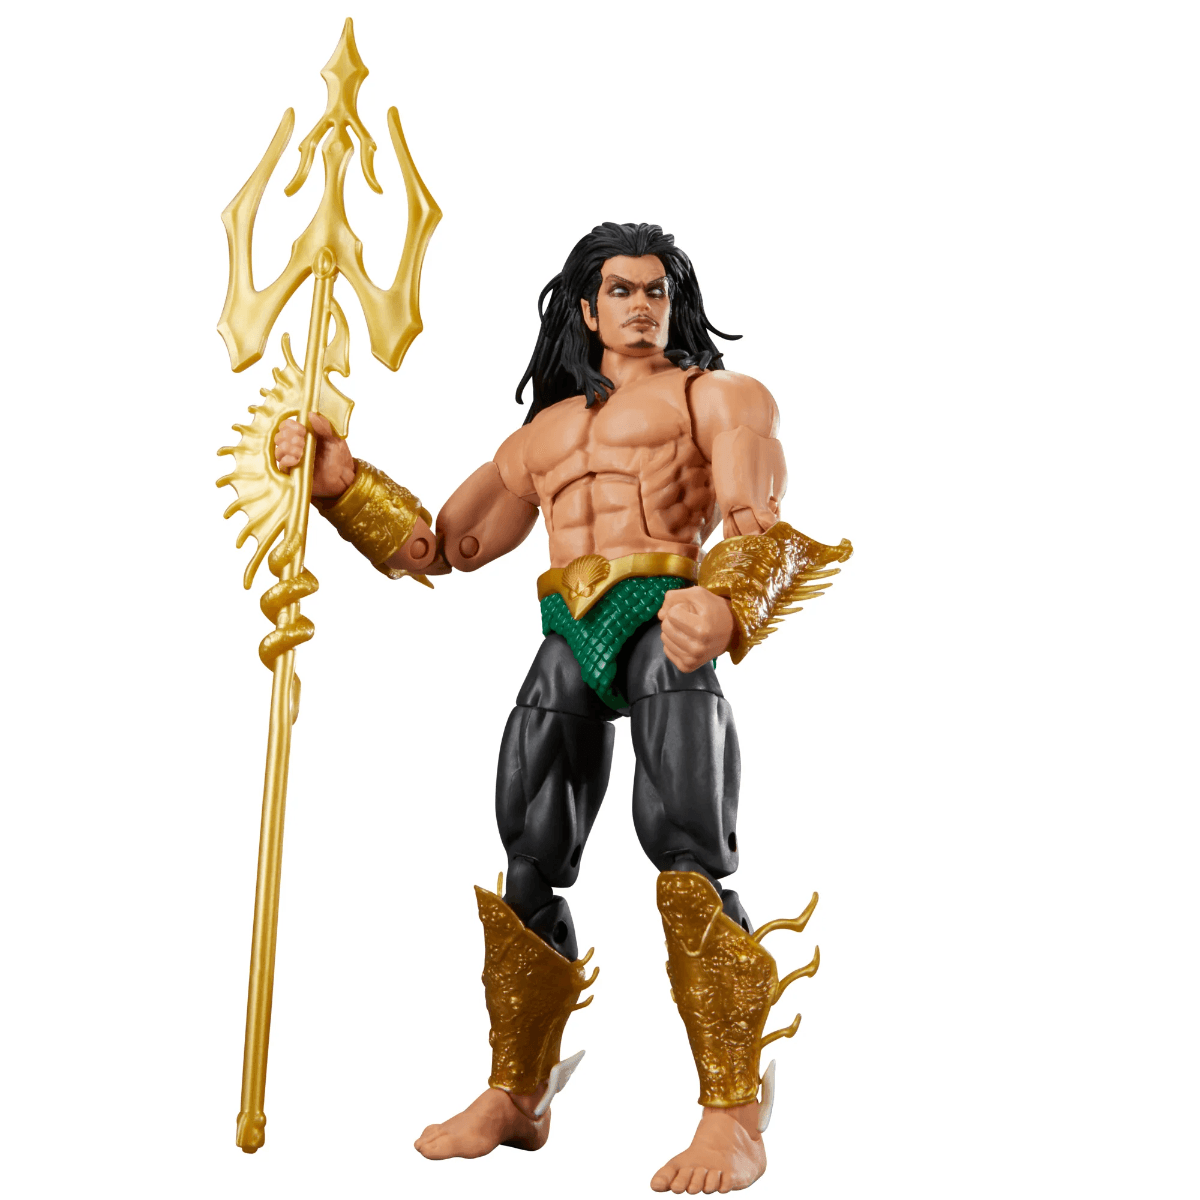 26080 Marvel Legends Series: Namor Comics Action Figure - Hasbro - Titan Pop Culture